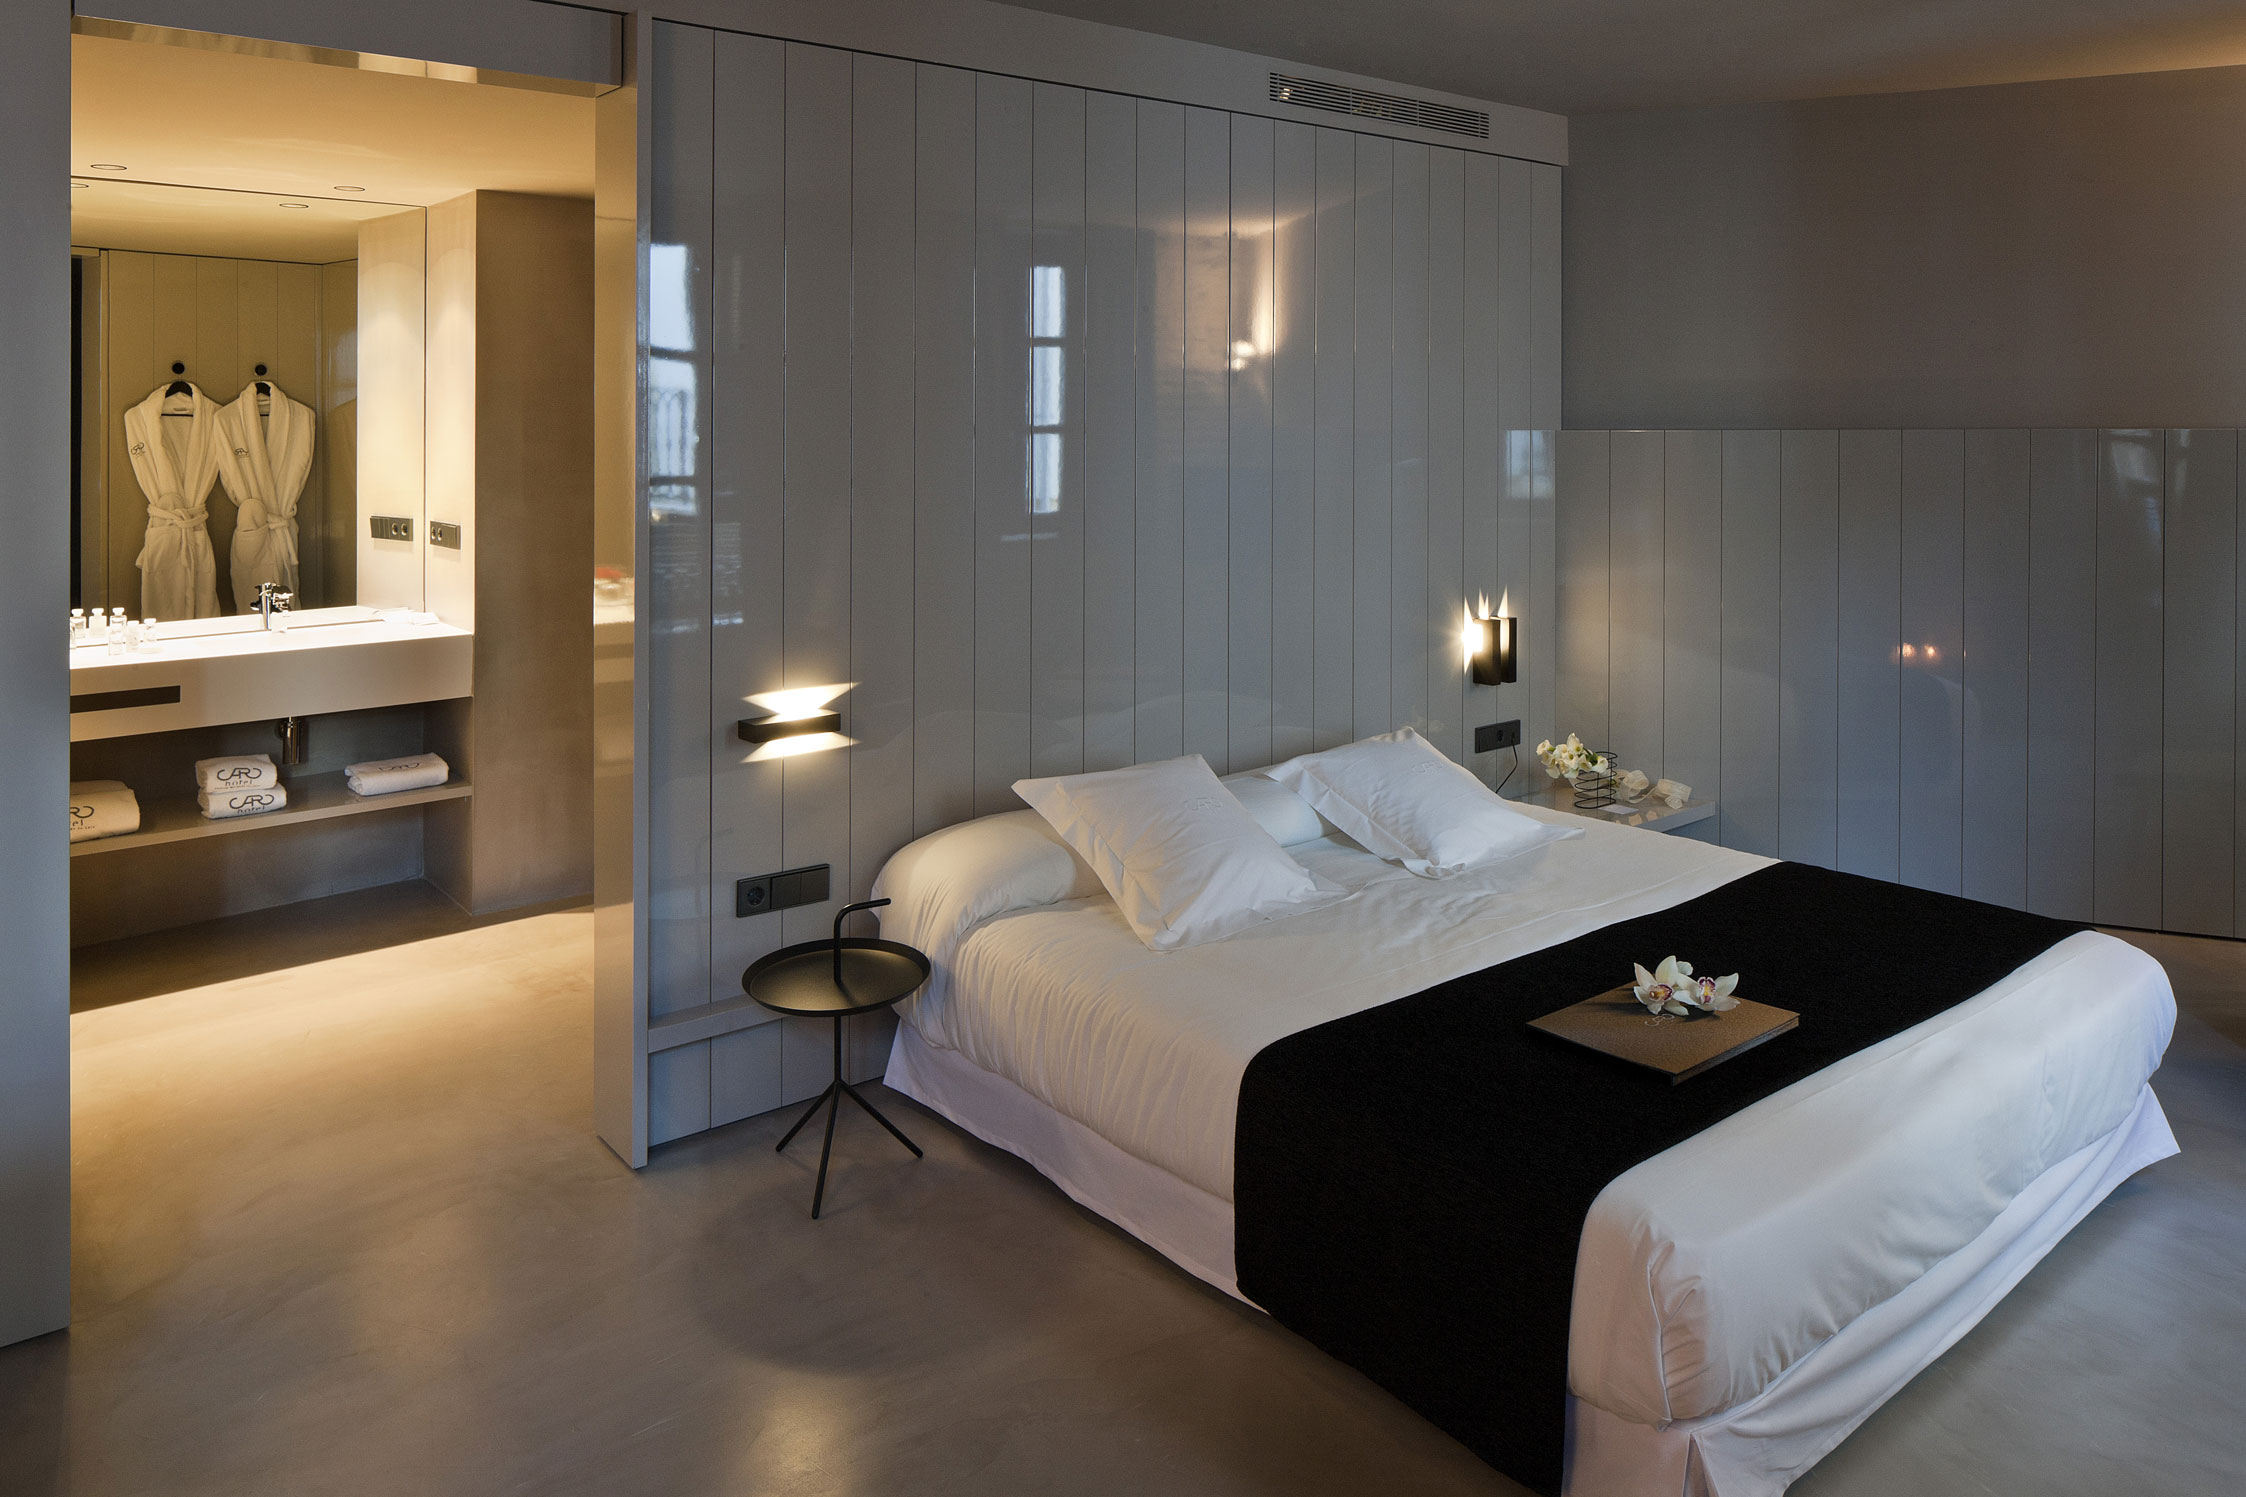 Новый дизайн номеров. Отель das stue в Берлине,интерьер. Спальня в гостинице. Спальня в гостиничном стиле. Интерьер гостиницы комната.